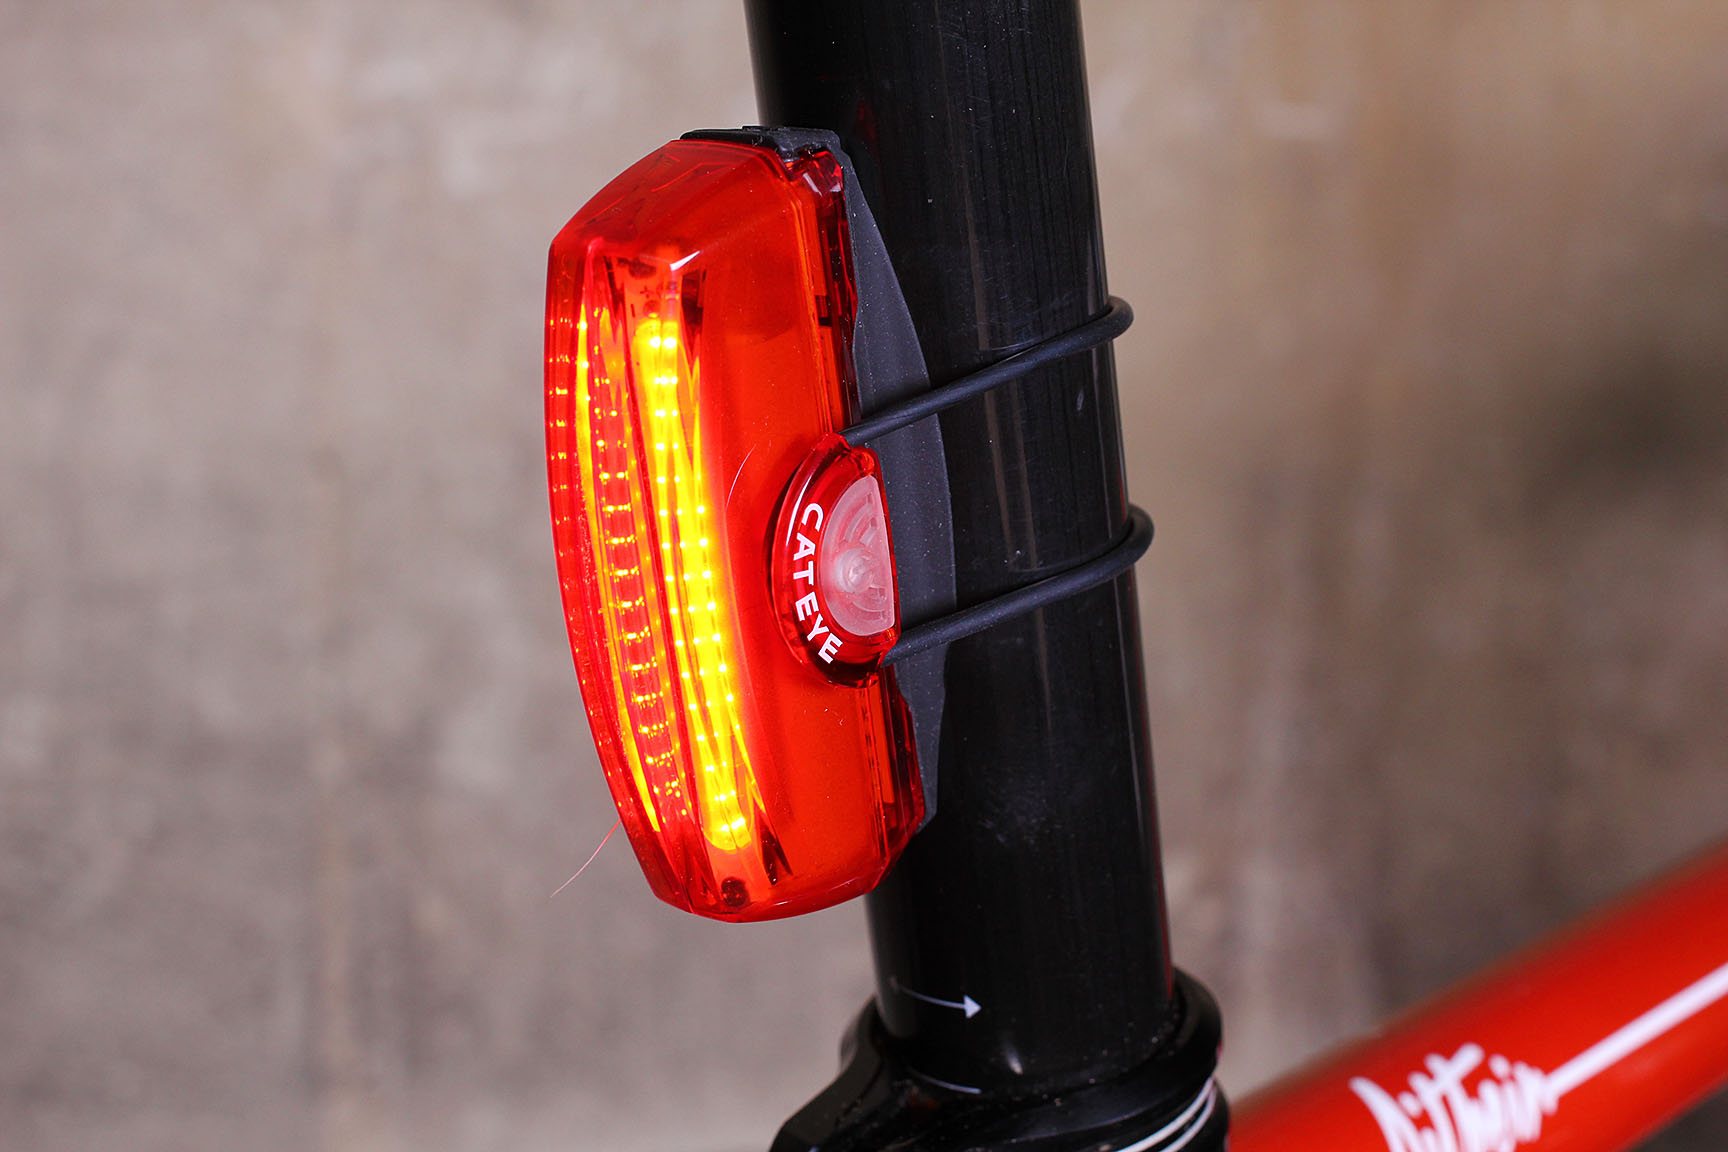 cateye rear bike lights